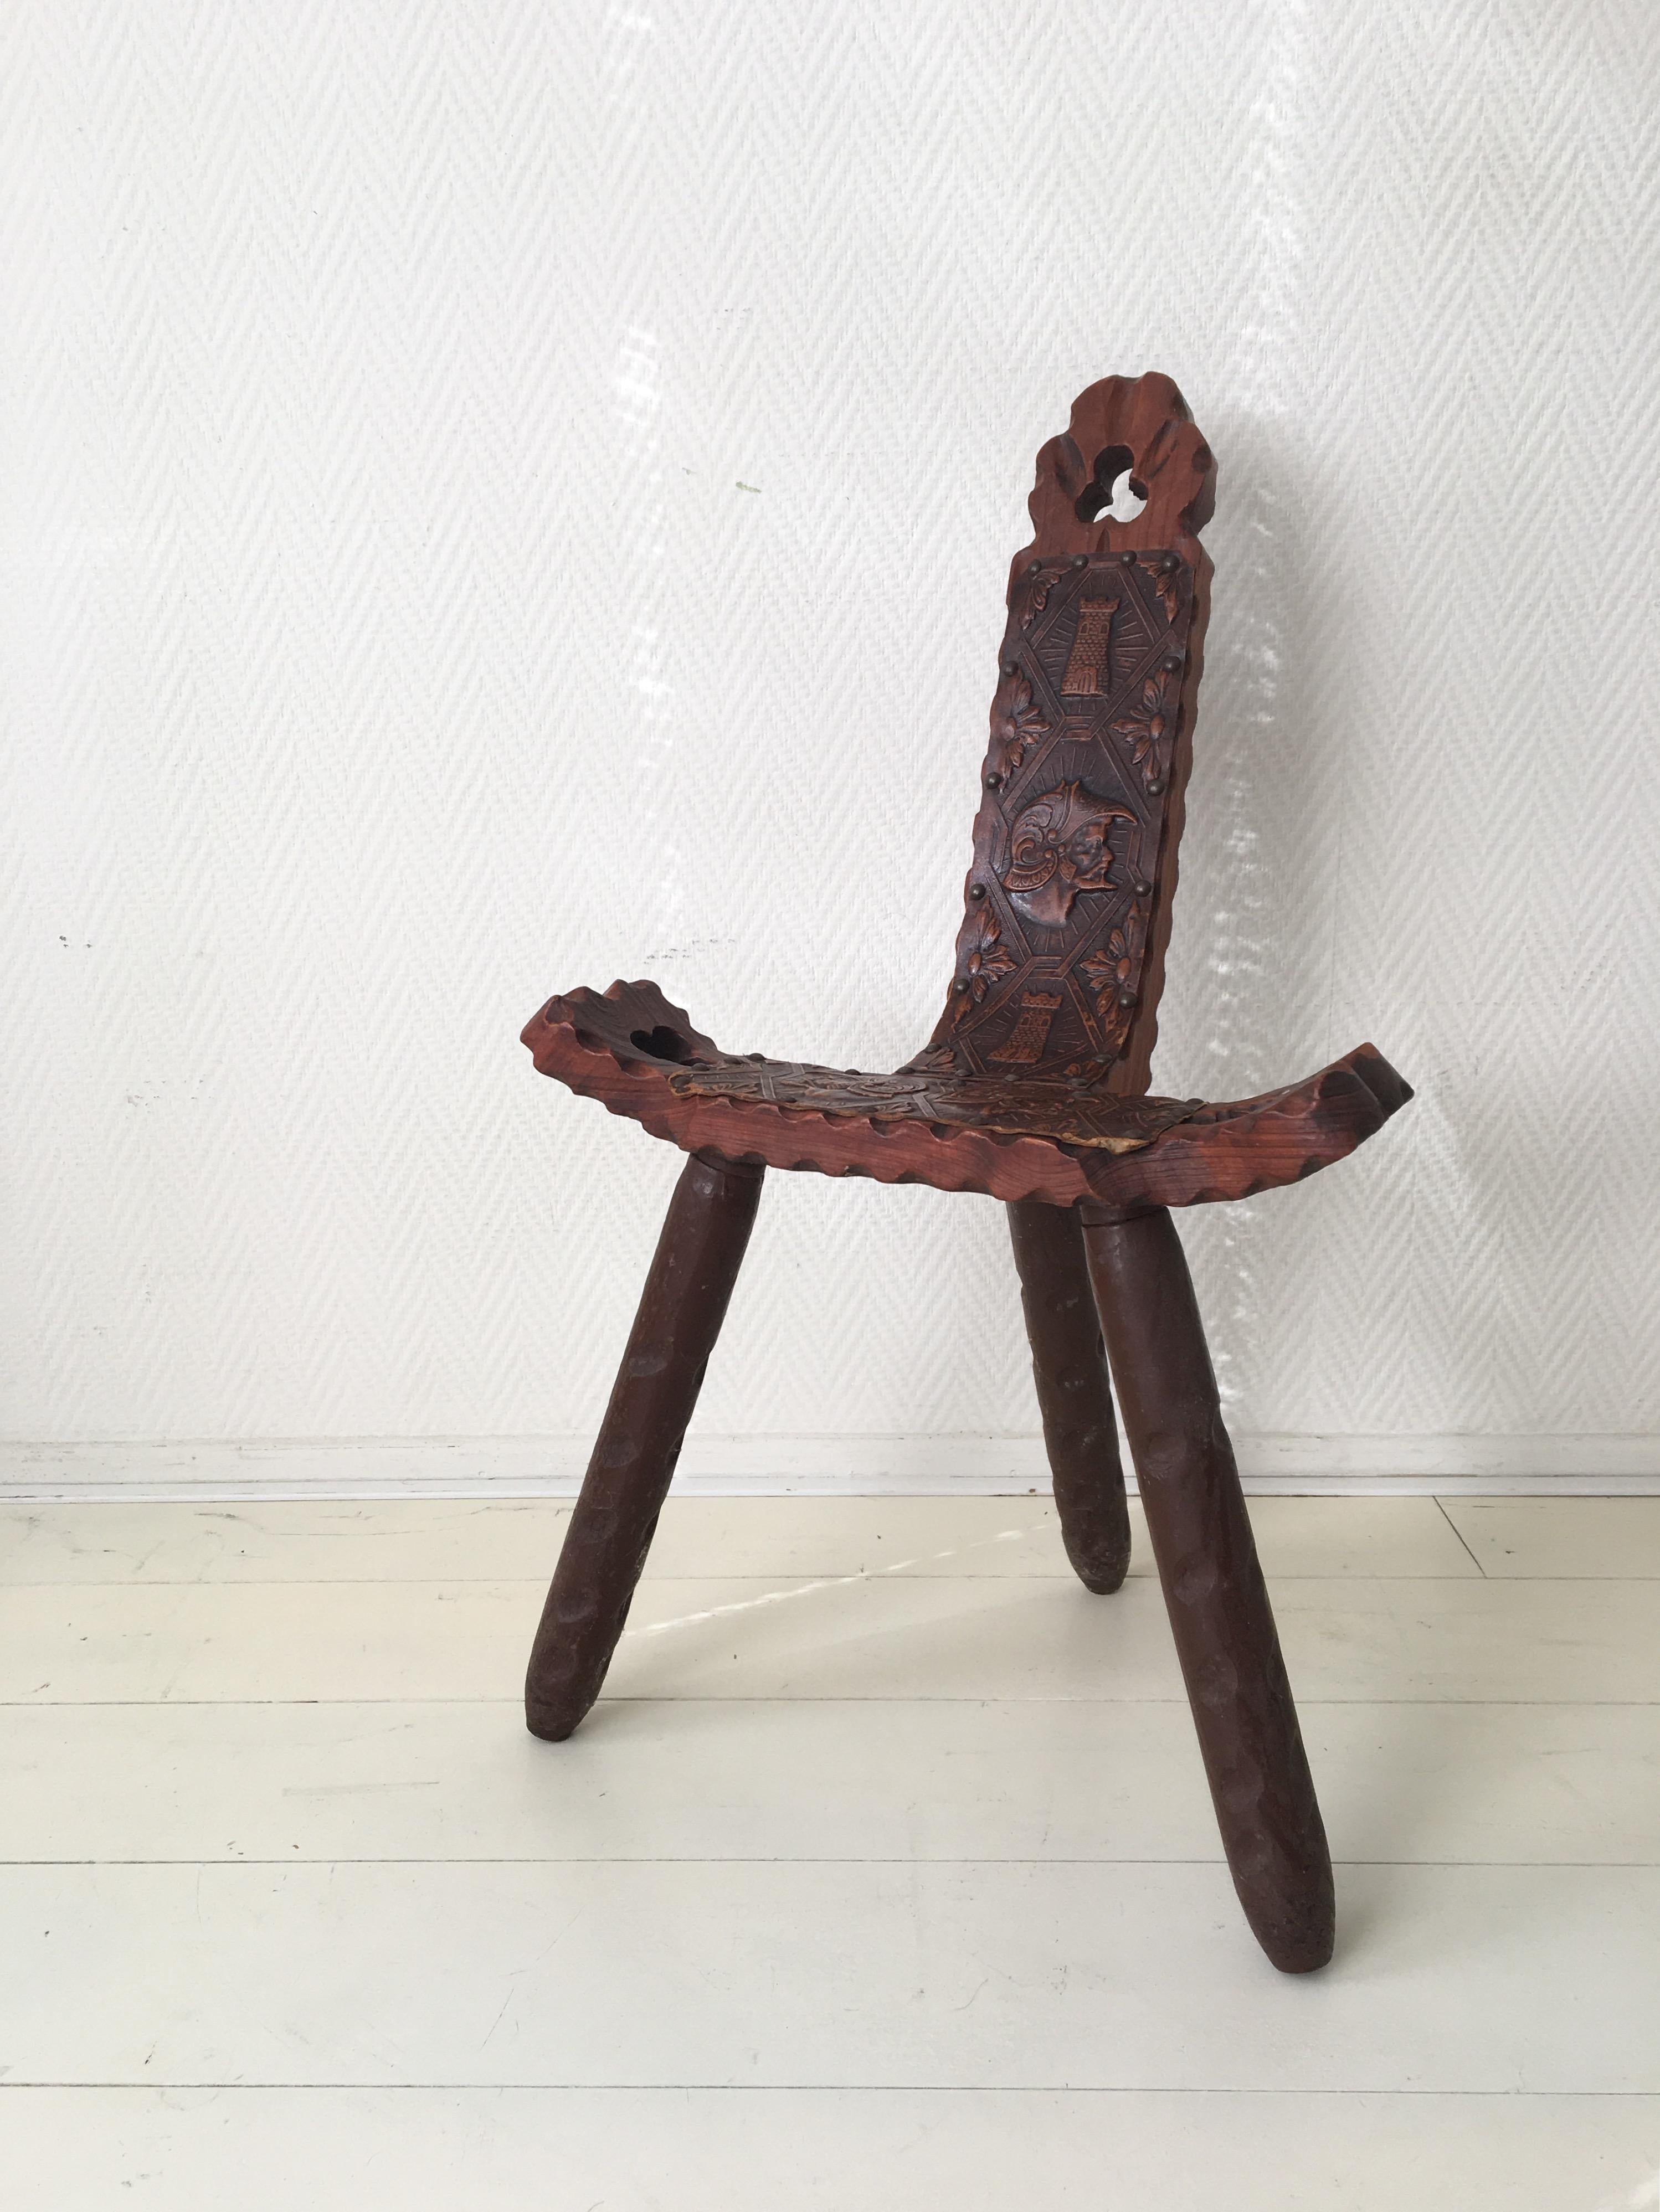 Wood Midcentury Brutalist Spanish Stools, Chairs